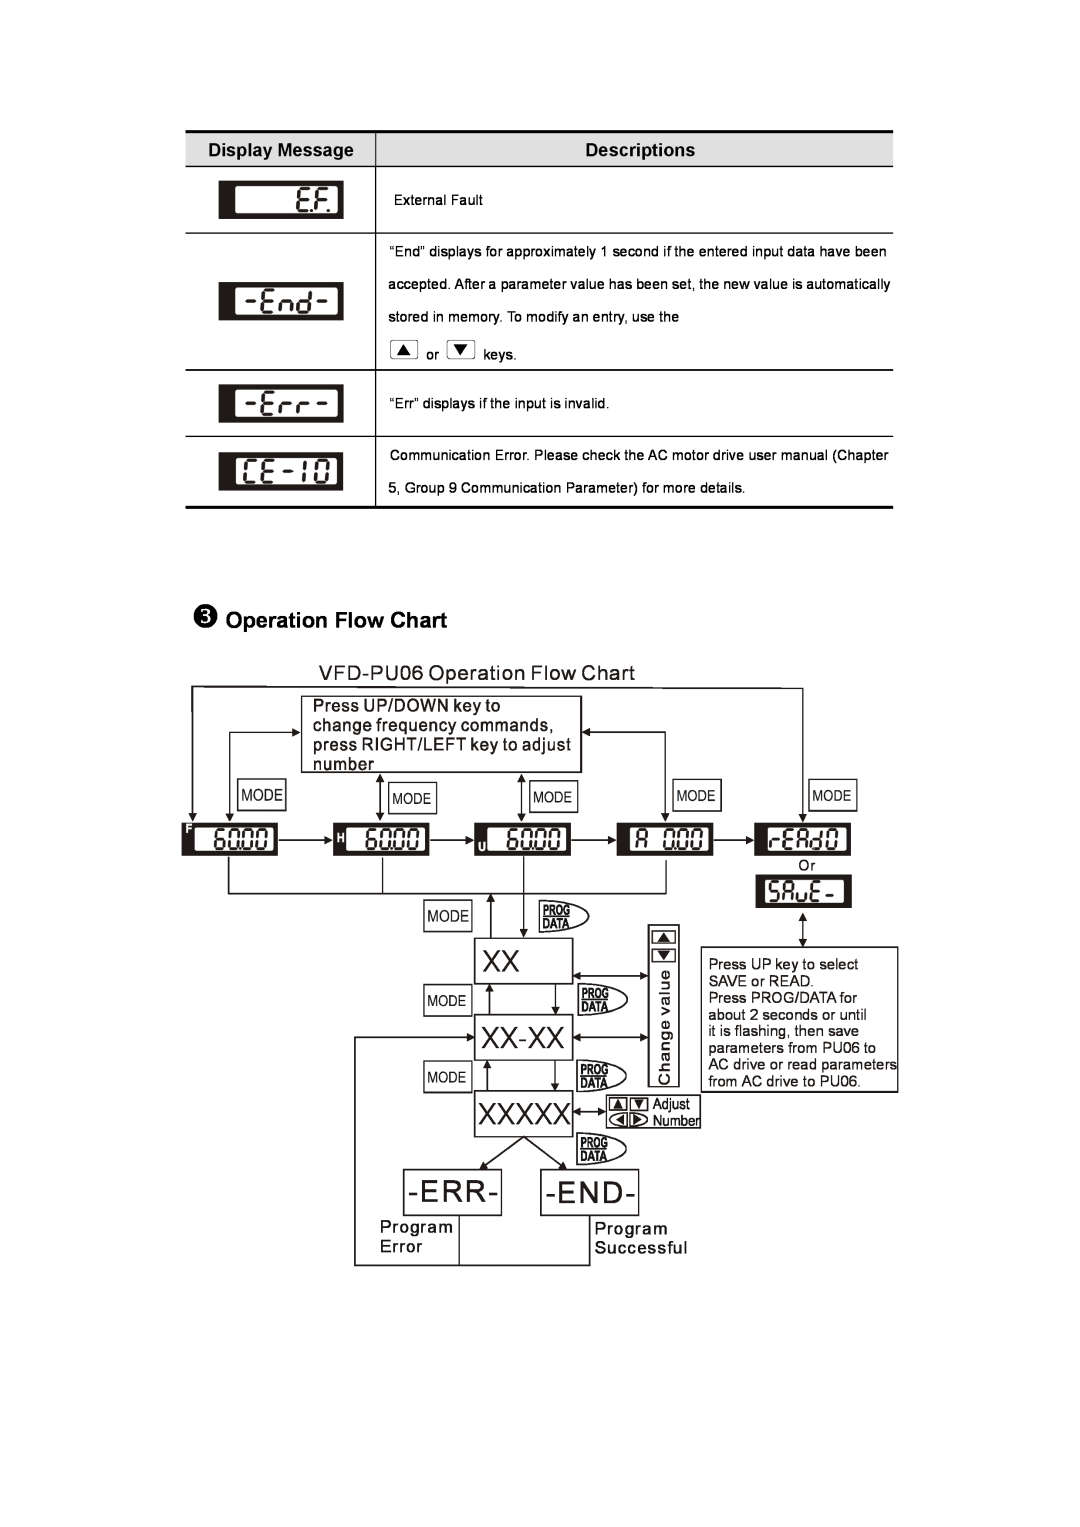 Delta Electronics Z Operation Flow Chart, Xx Xx-Xx, Err--End, VFD-PU06 Operation Flow Chart, Display Message, Program 